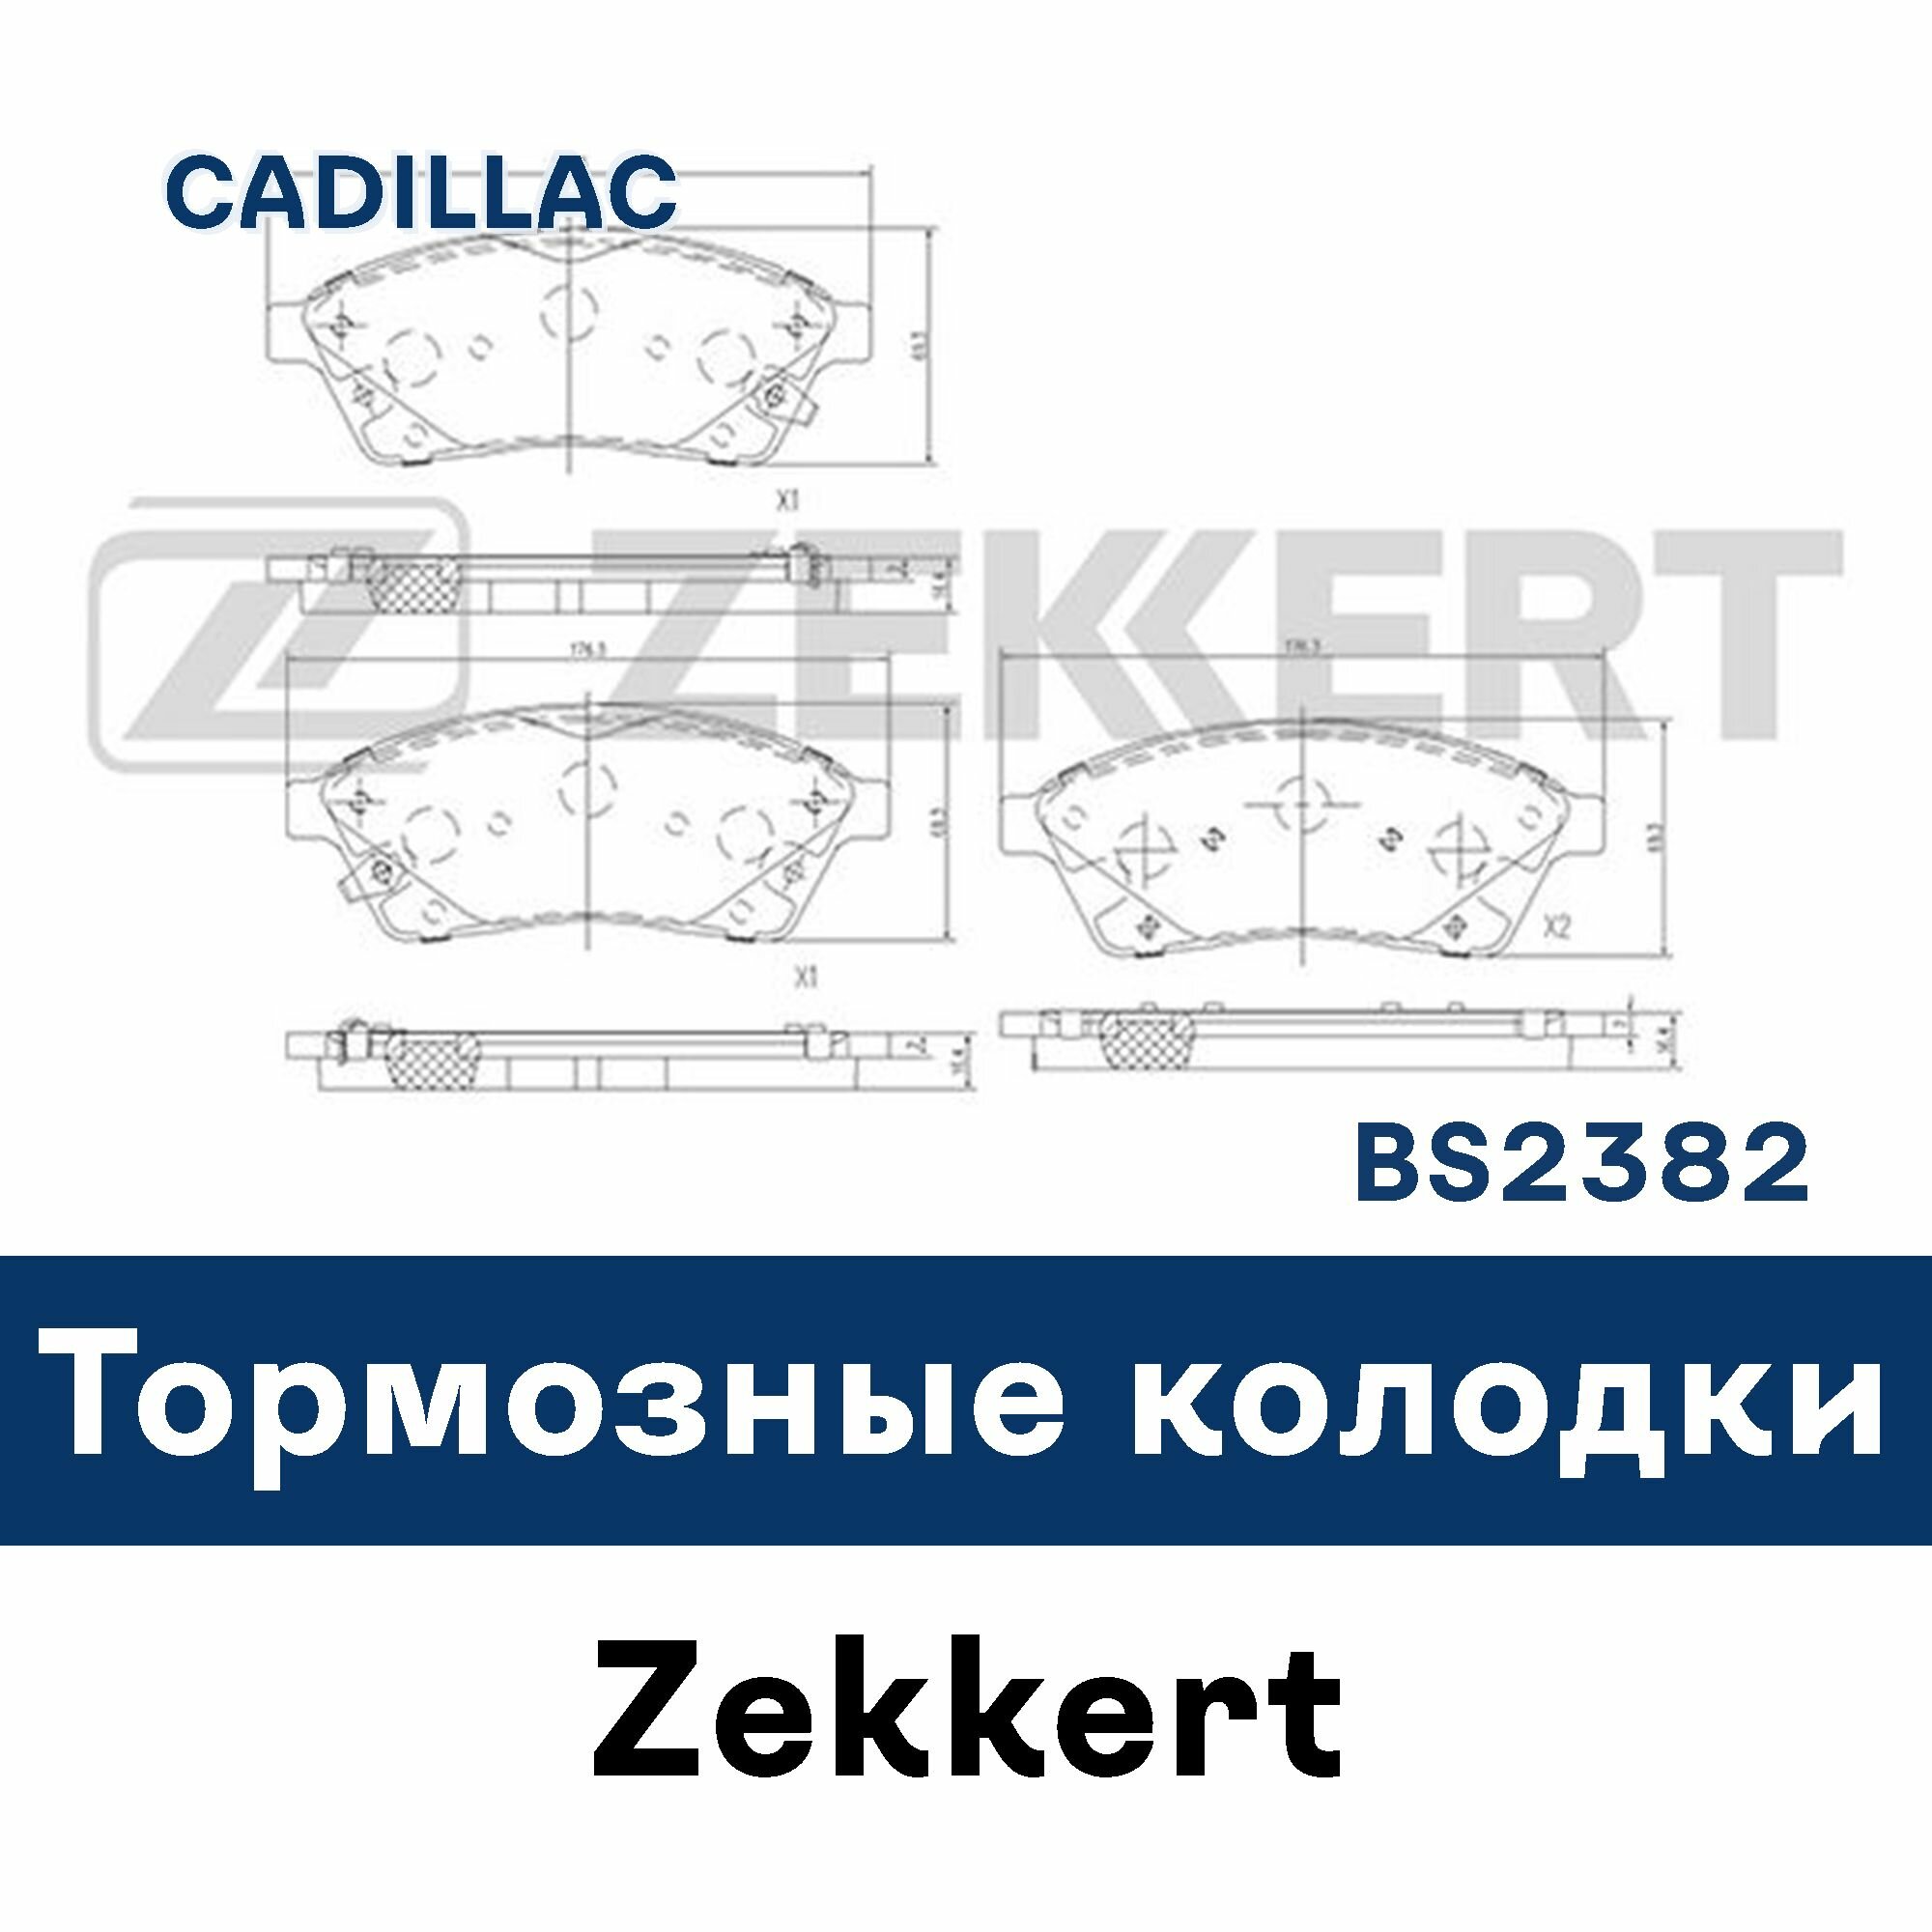 Тормозные колодки для SRX BS2382 ZEKKERT